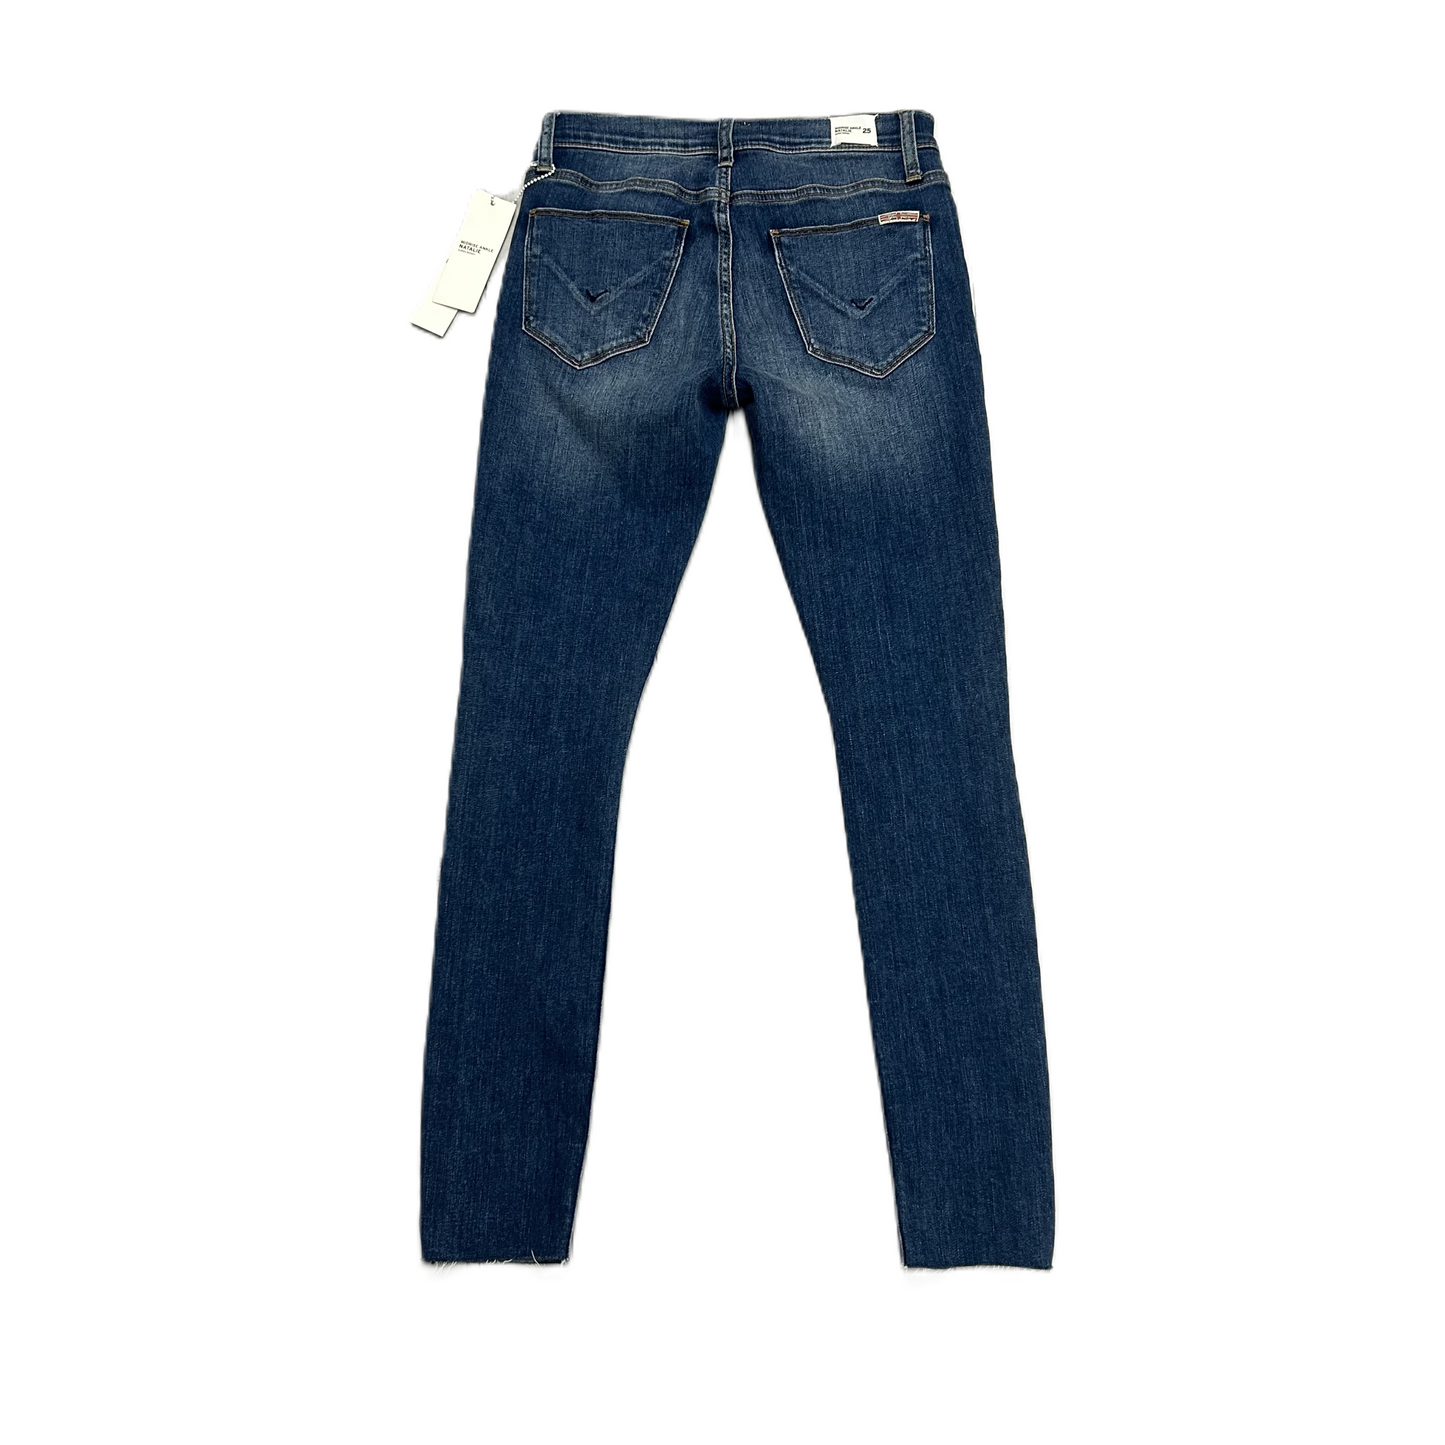 Blue Denim Jeans Designer By Hudson, Size: 2